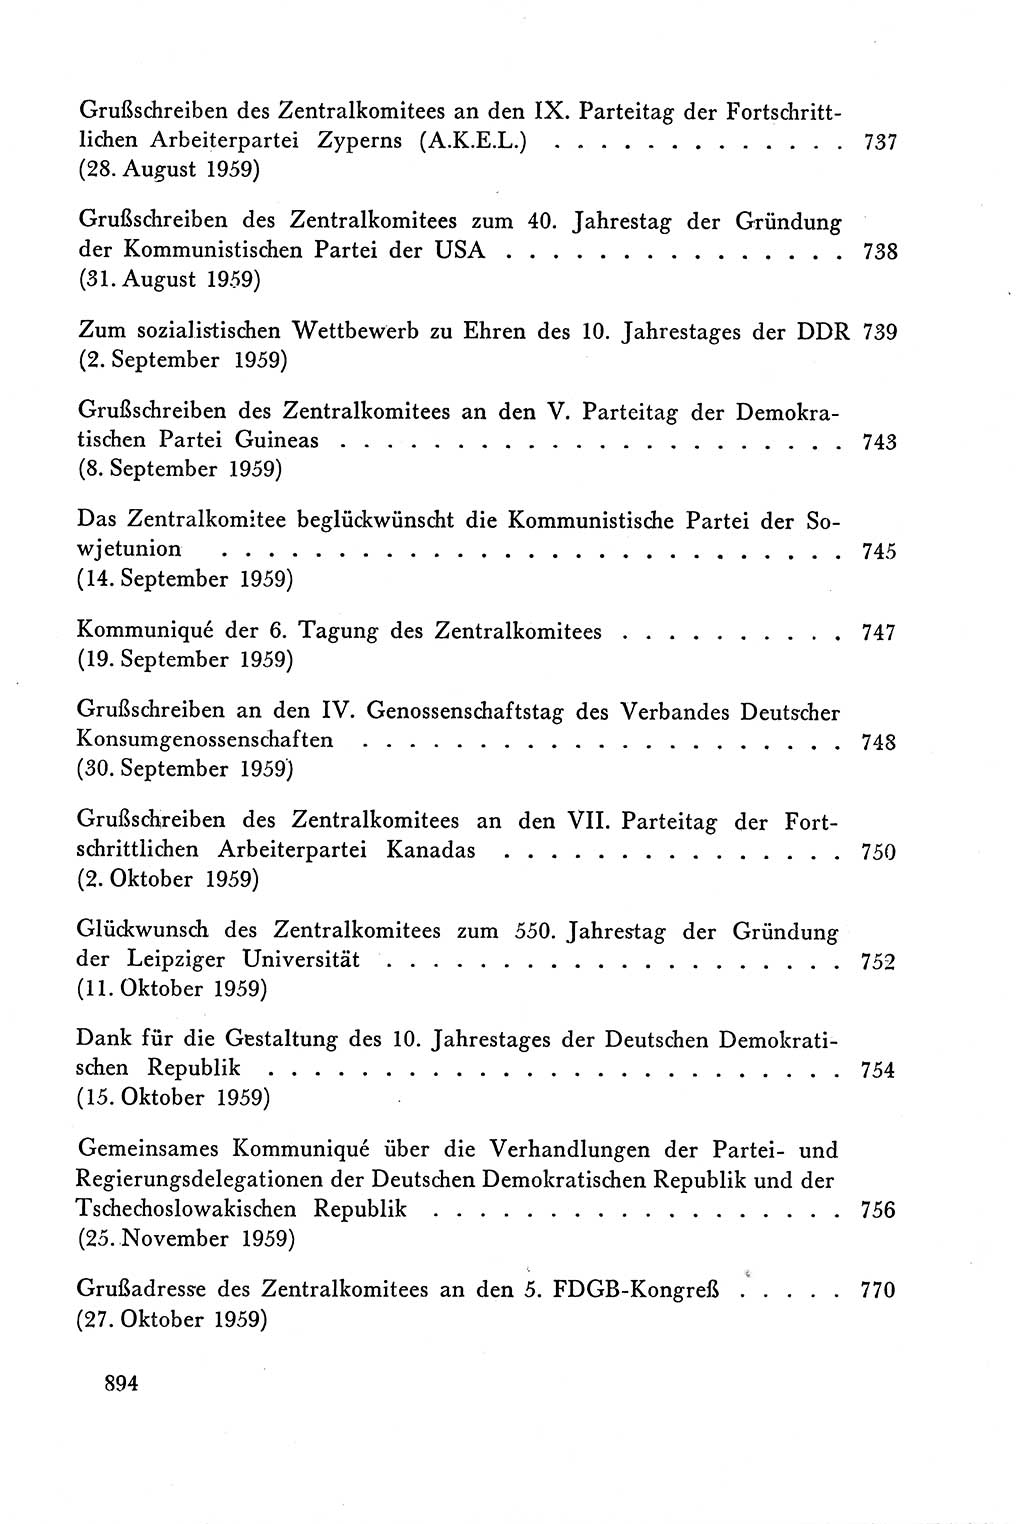 Dokumente der Sozialistischen Einheitspartei Deutschlands (SED) [Deutsche Demokratische Republik (DDR)] 1958-1959, Seite 894 (Dok. SED DDR 1958-1959, S. 894)